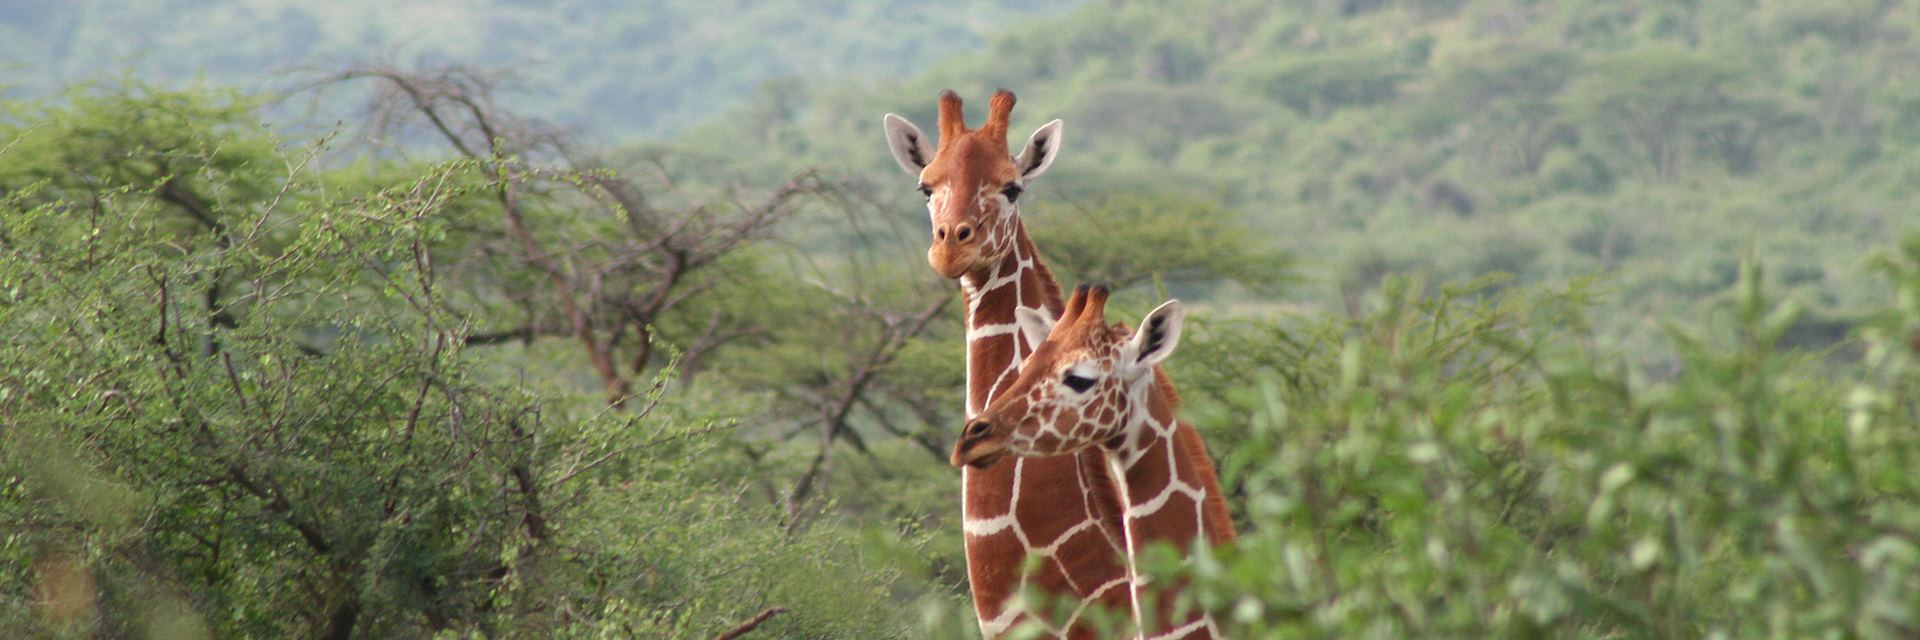 Giraffe at Il Ngwesi Group Ranch